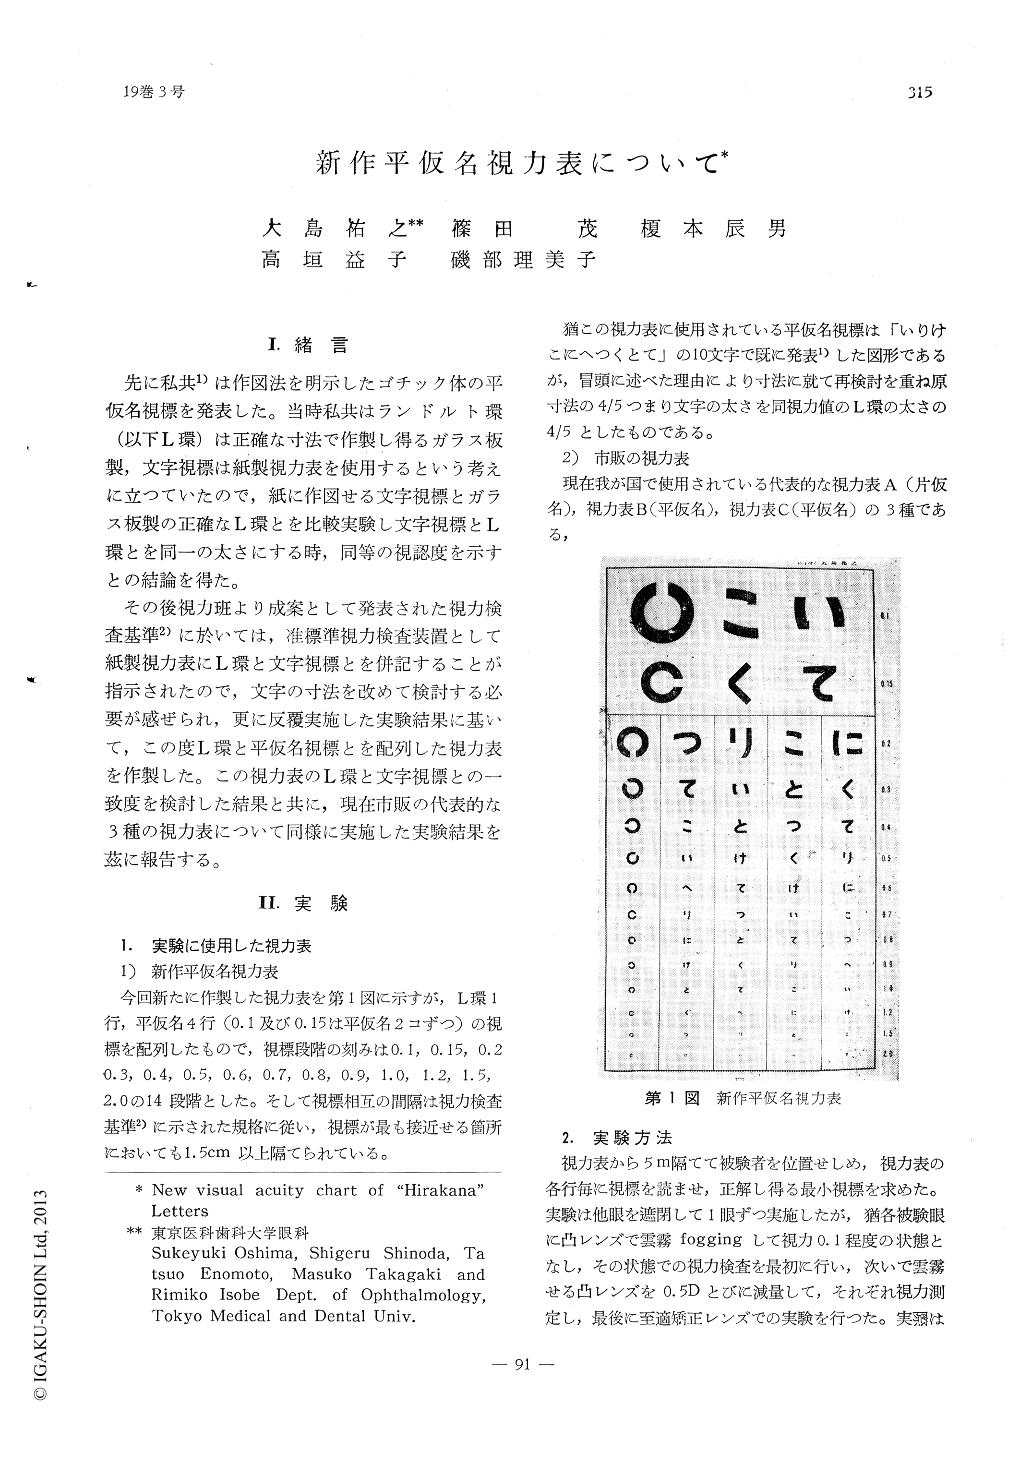 新作平仮名視力表について (臨床眼科 19巻3号) | 医書.jp